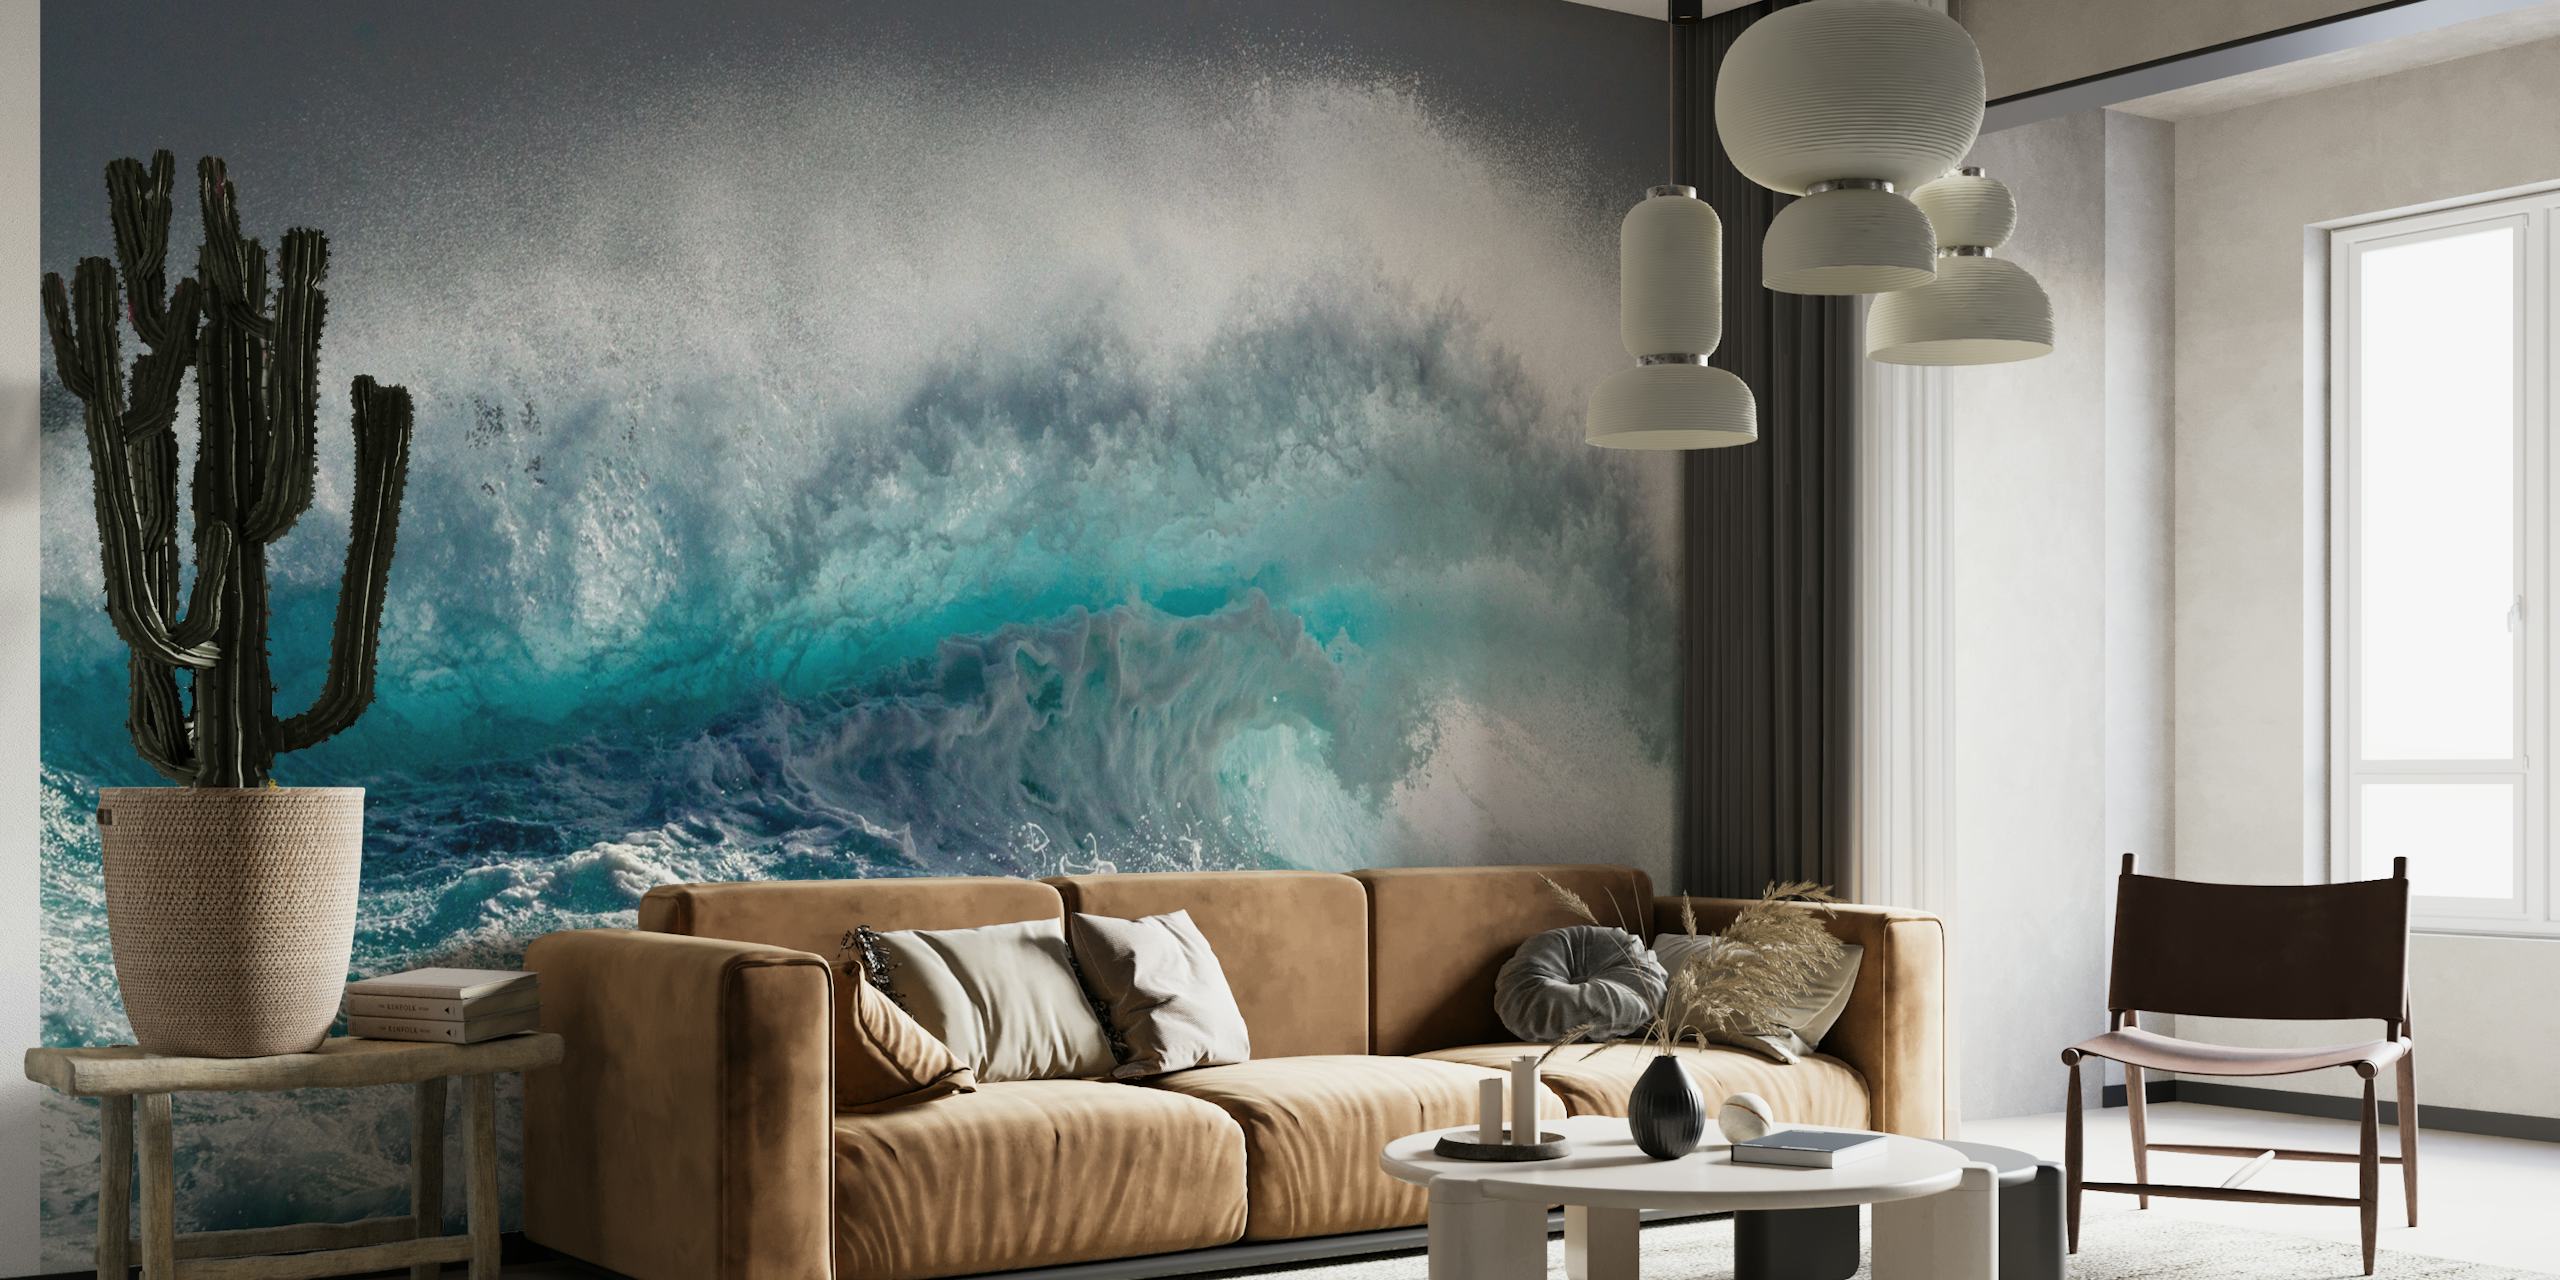 Zidna slika Mighty Water koja prikazuje val koji izaziva strahopoštovanje u bogatim nijansama plave i bijele